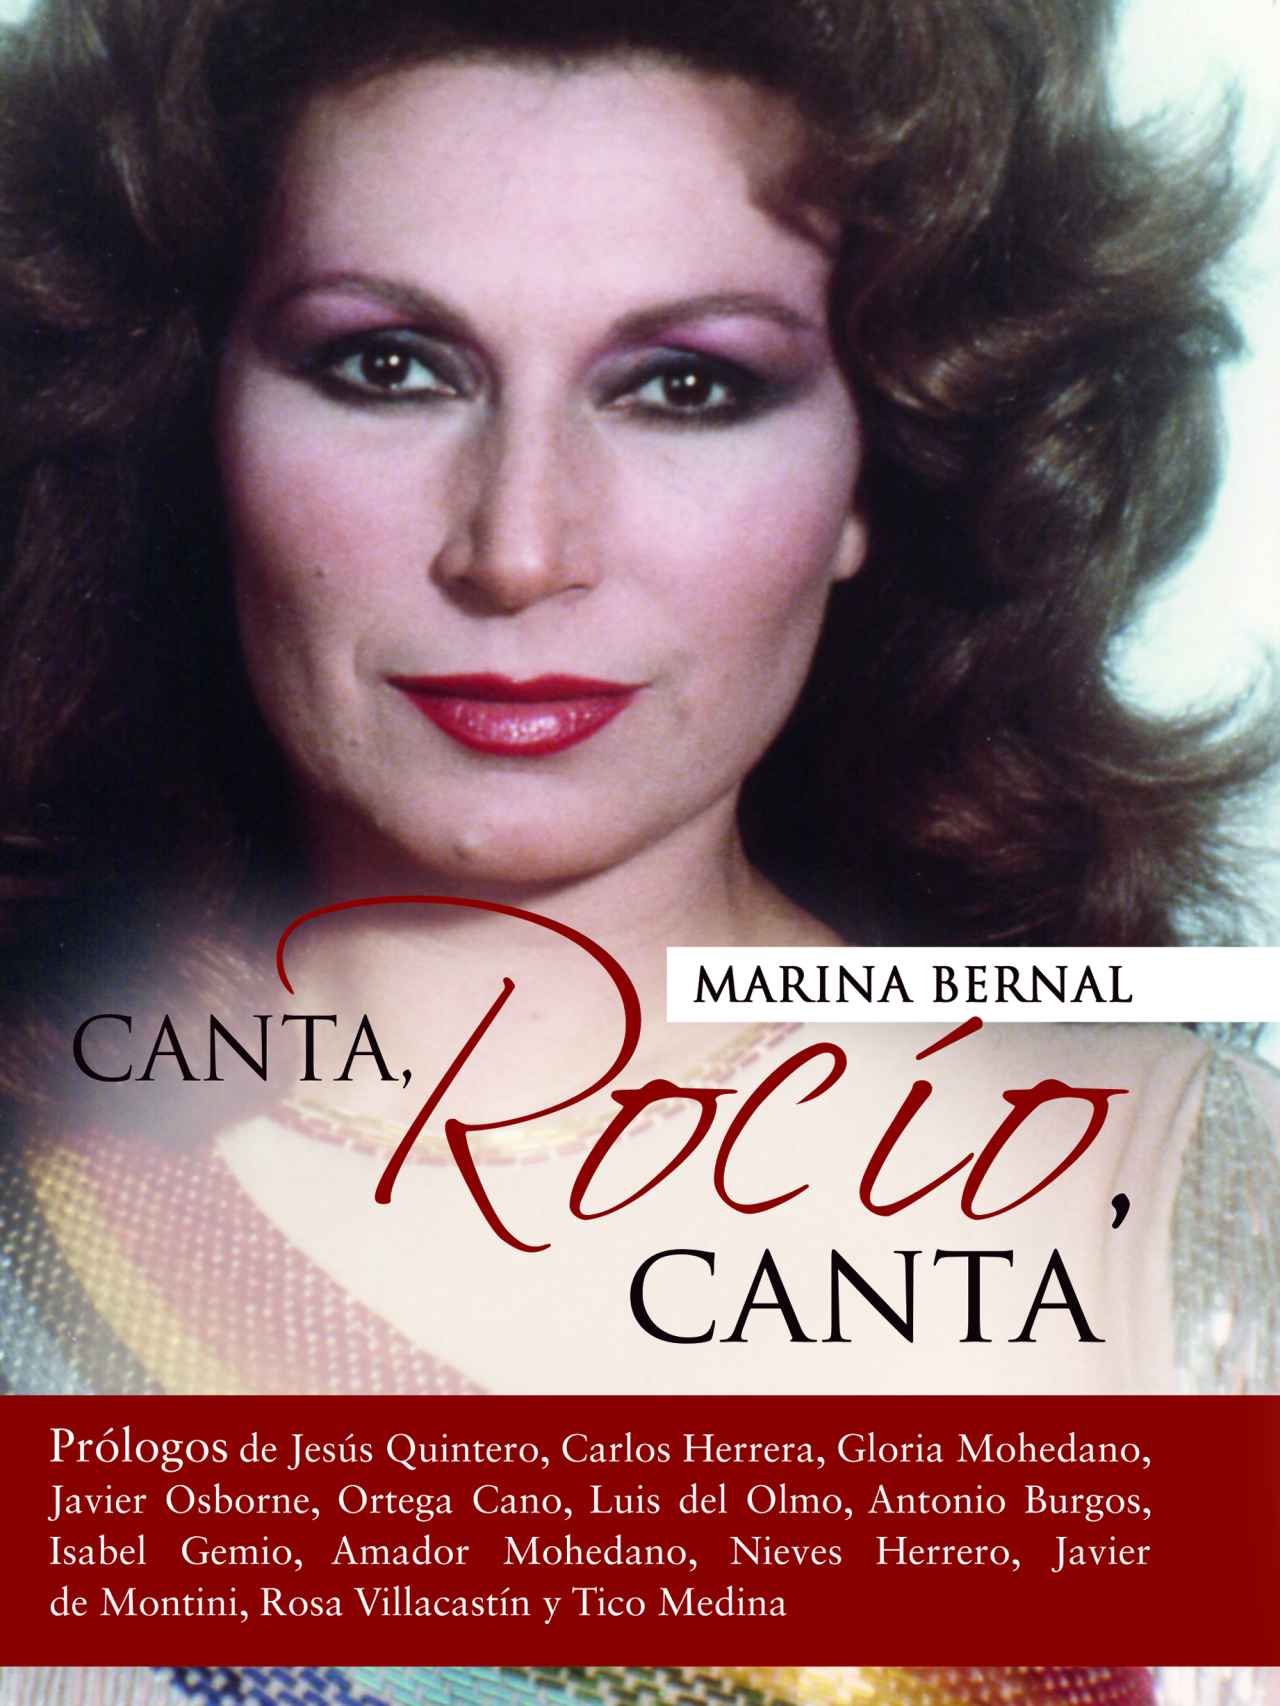 La portada del libro de Marina Bernal.